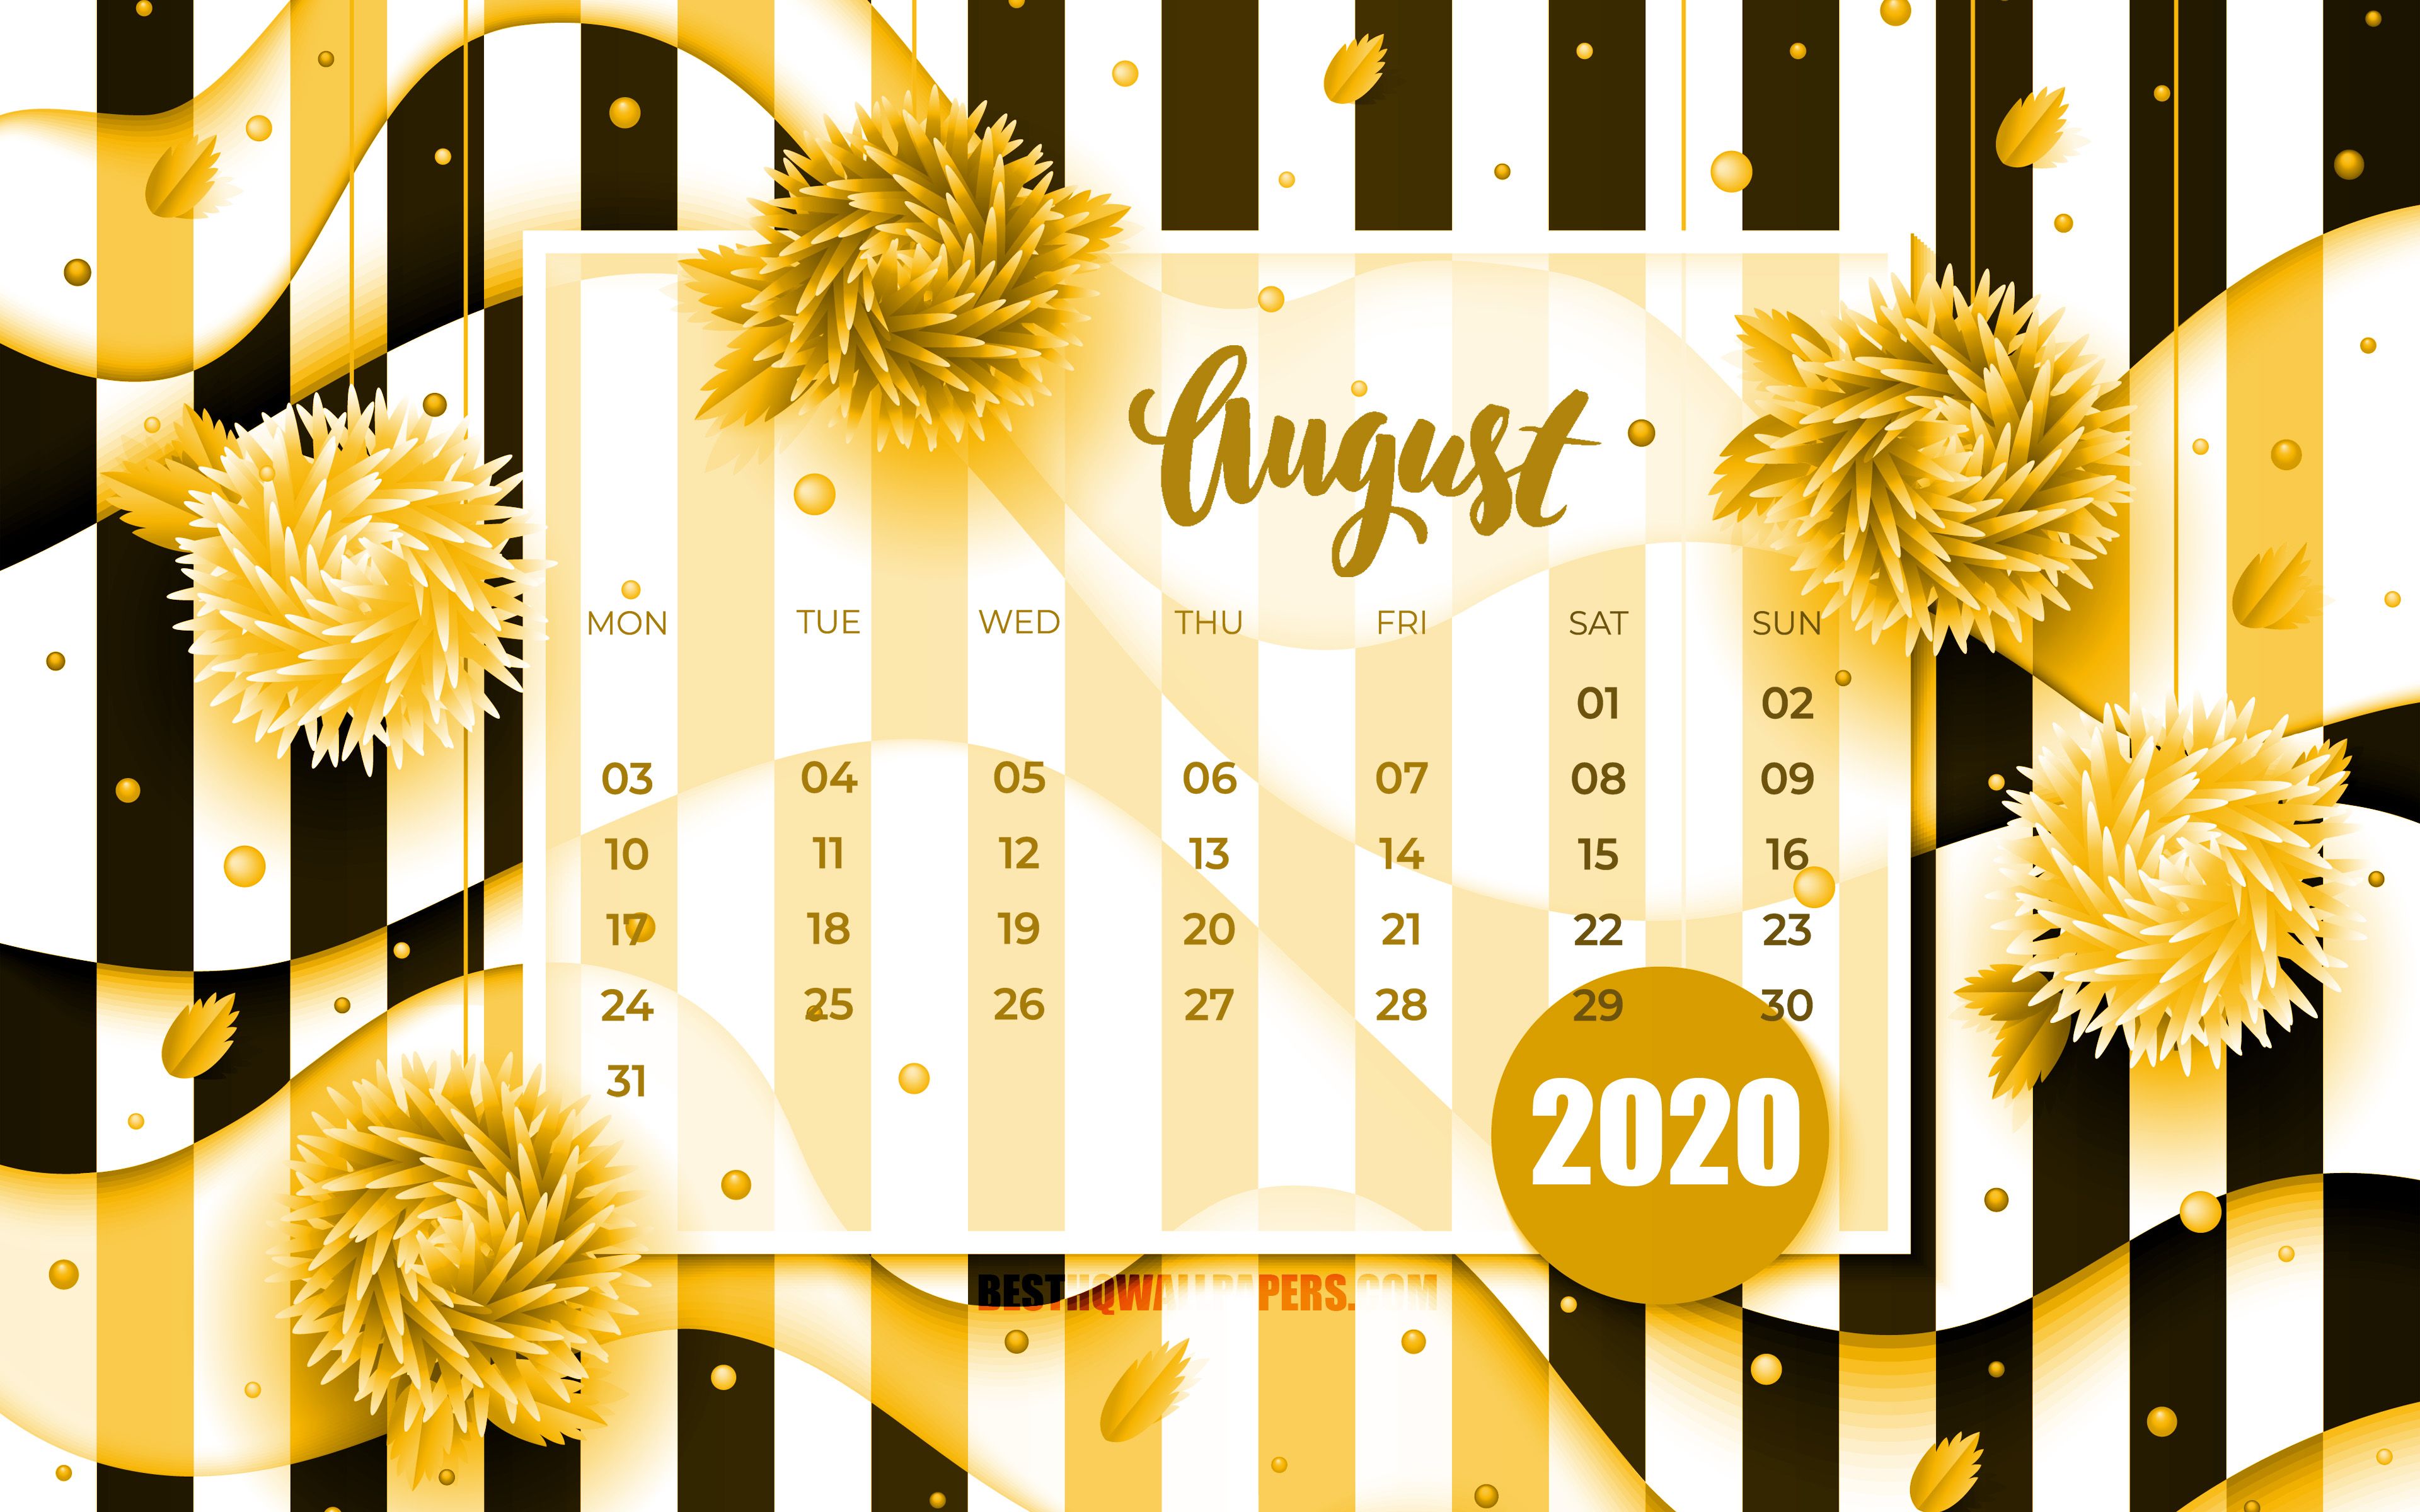 Download wallpaper August 2020 Calendar, 4k, yellow 3D flowers